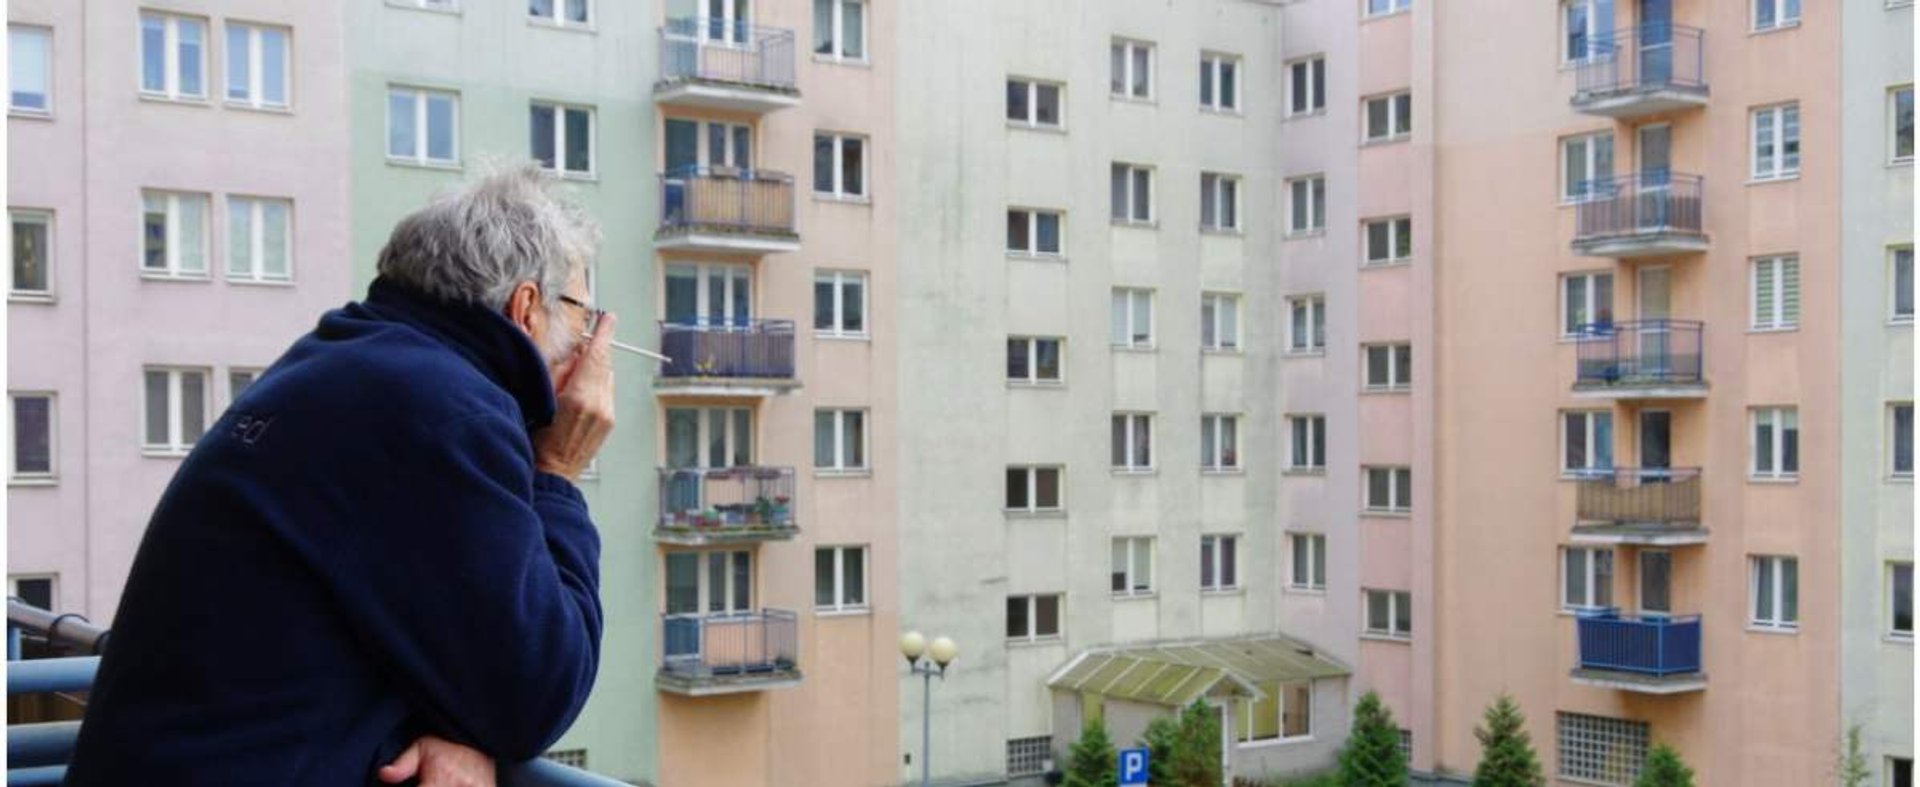 PHOTO: ZOFIA I MAREK BAZAK / EAST NEWS Akcja "Bezpieczny Senior", podstawowe zasady bezpieczenstwa - zostan w domu w czasie pandemii koronawirusa - relaks na balkonie zamiast spaceru